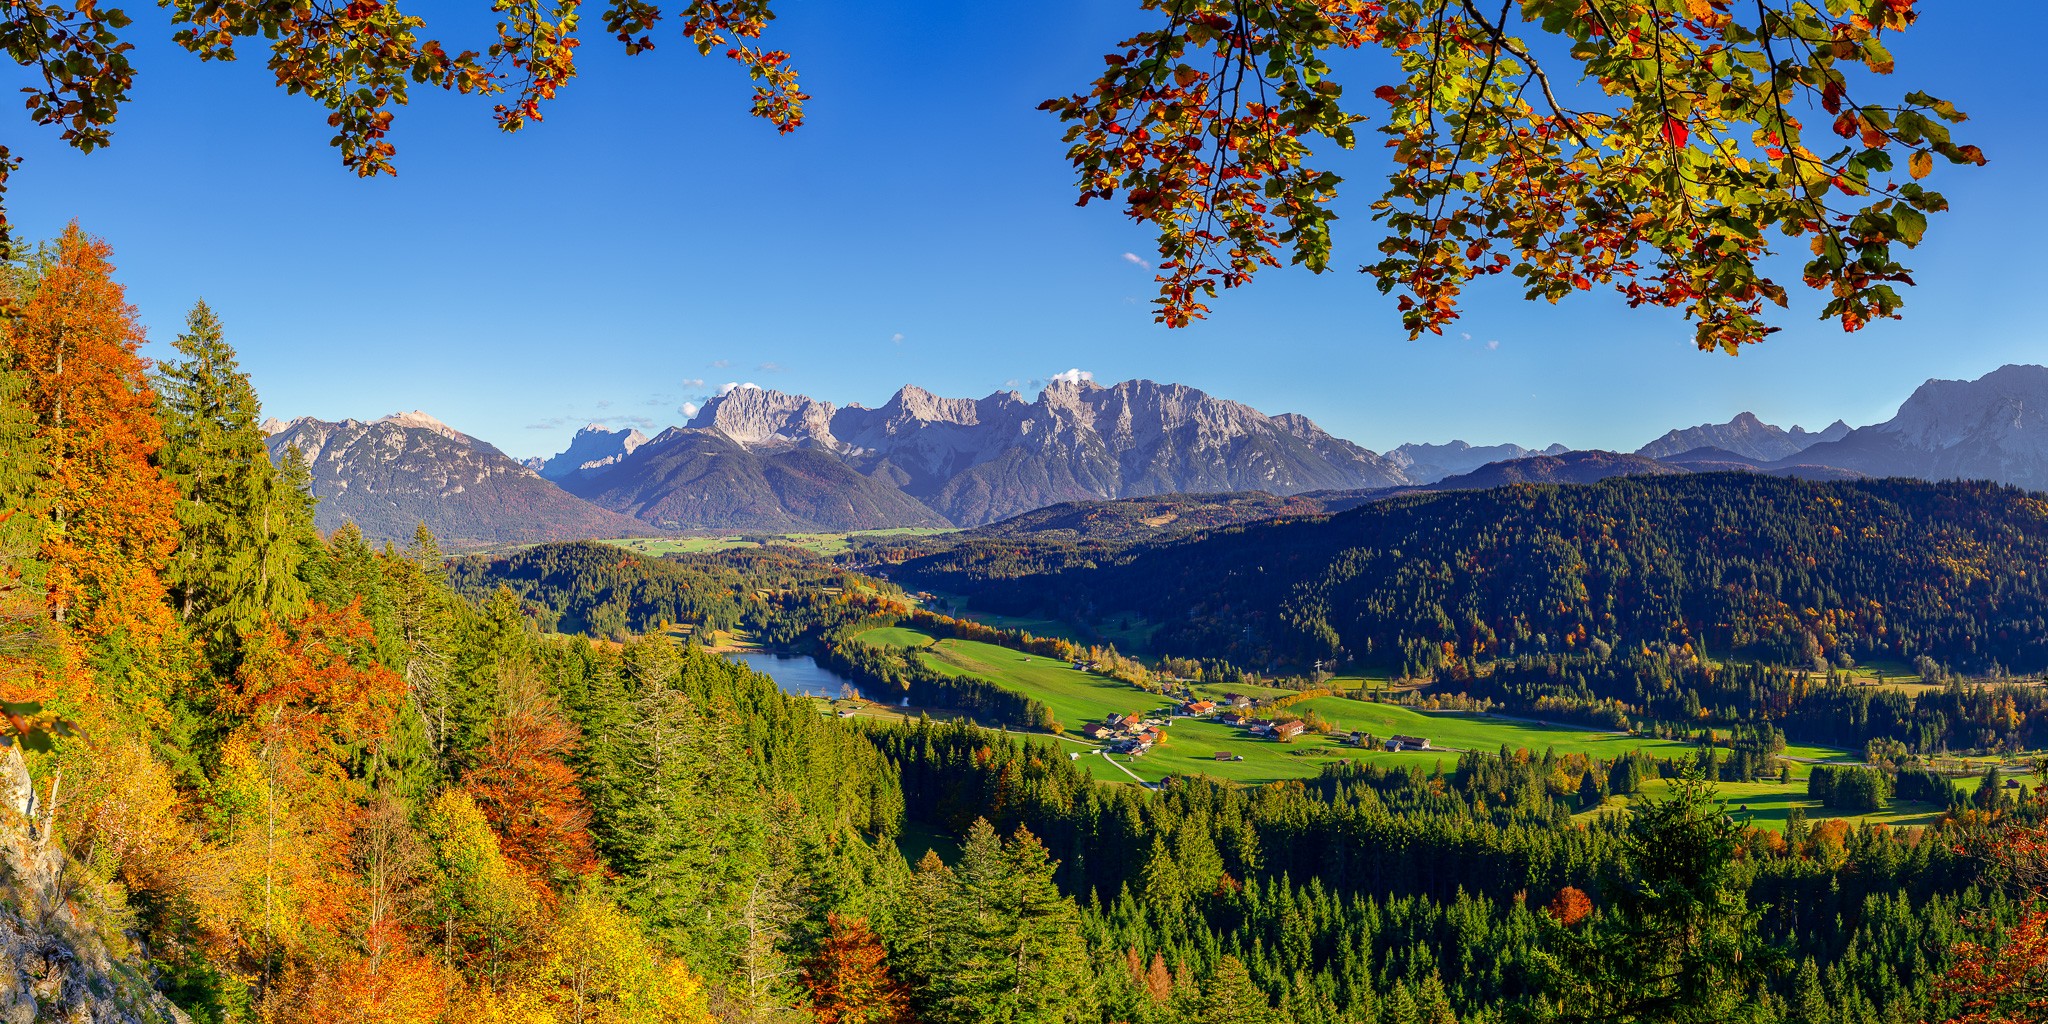 Das bunte Herbstlaub bringt Farbe in die Wälder zwischen Gerold, Klais und Mittenwald. Blick auf den Geroldsee und das Karwendelgebirge.